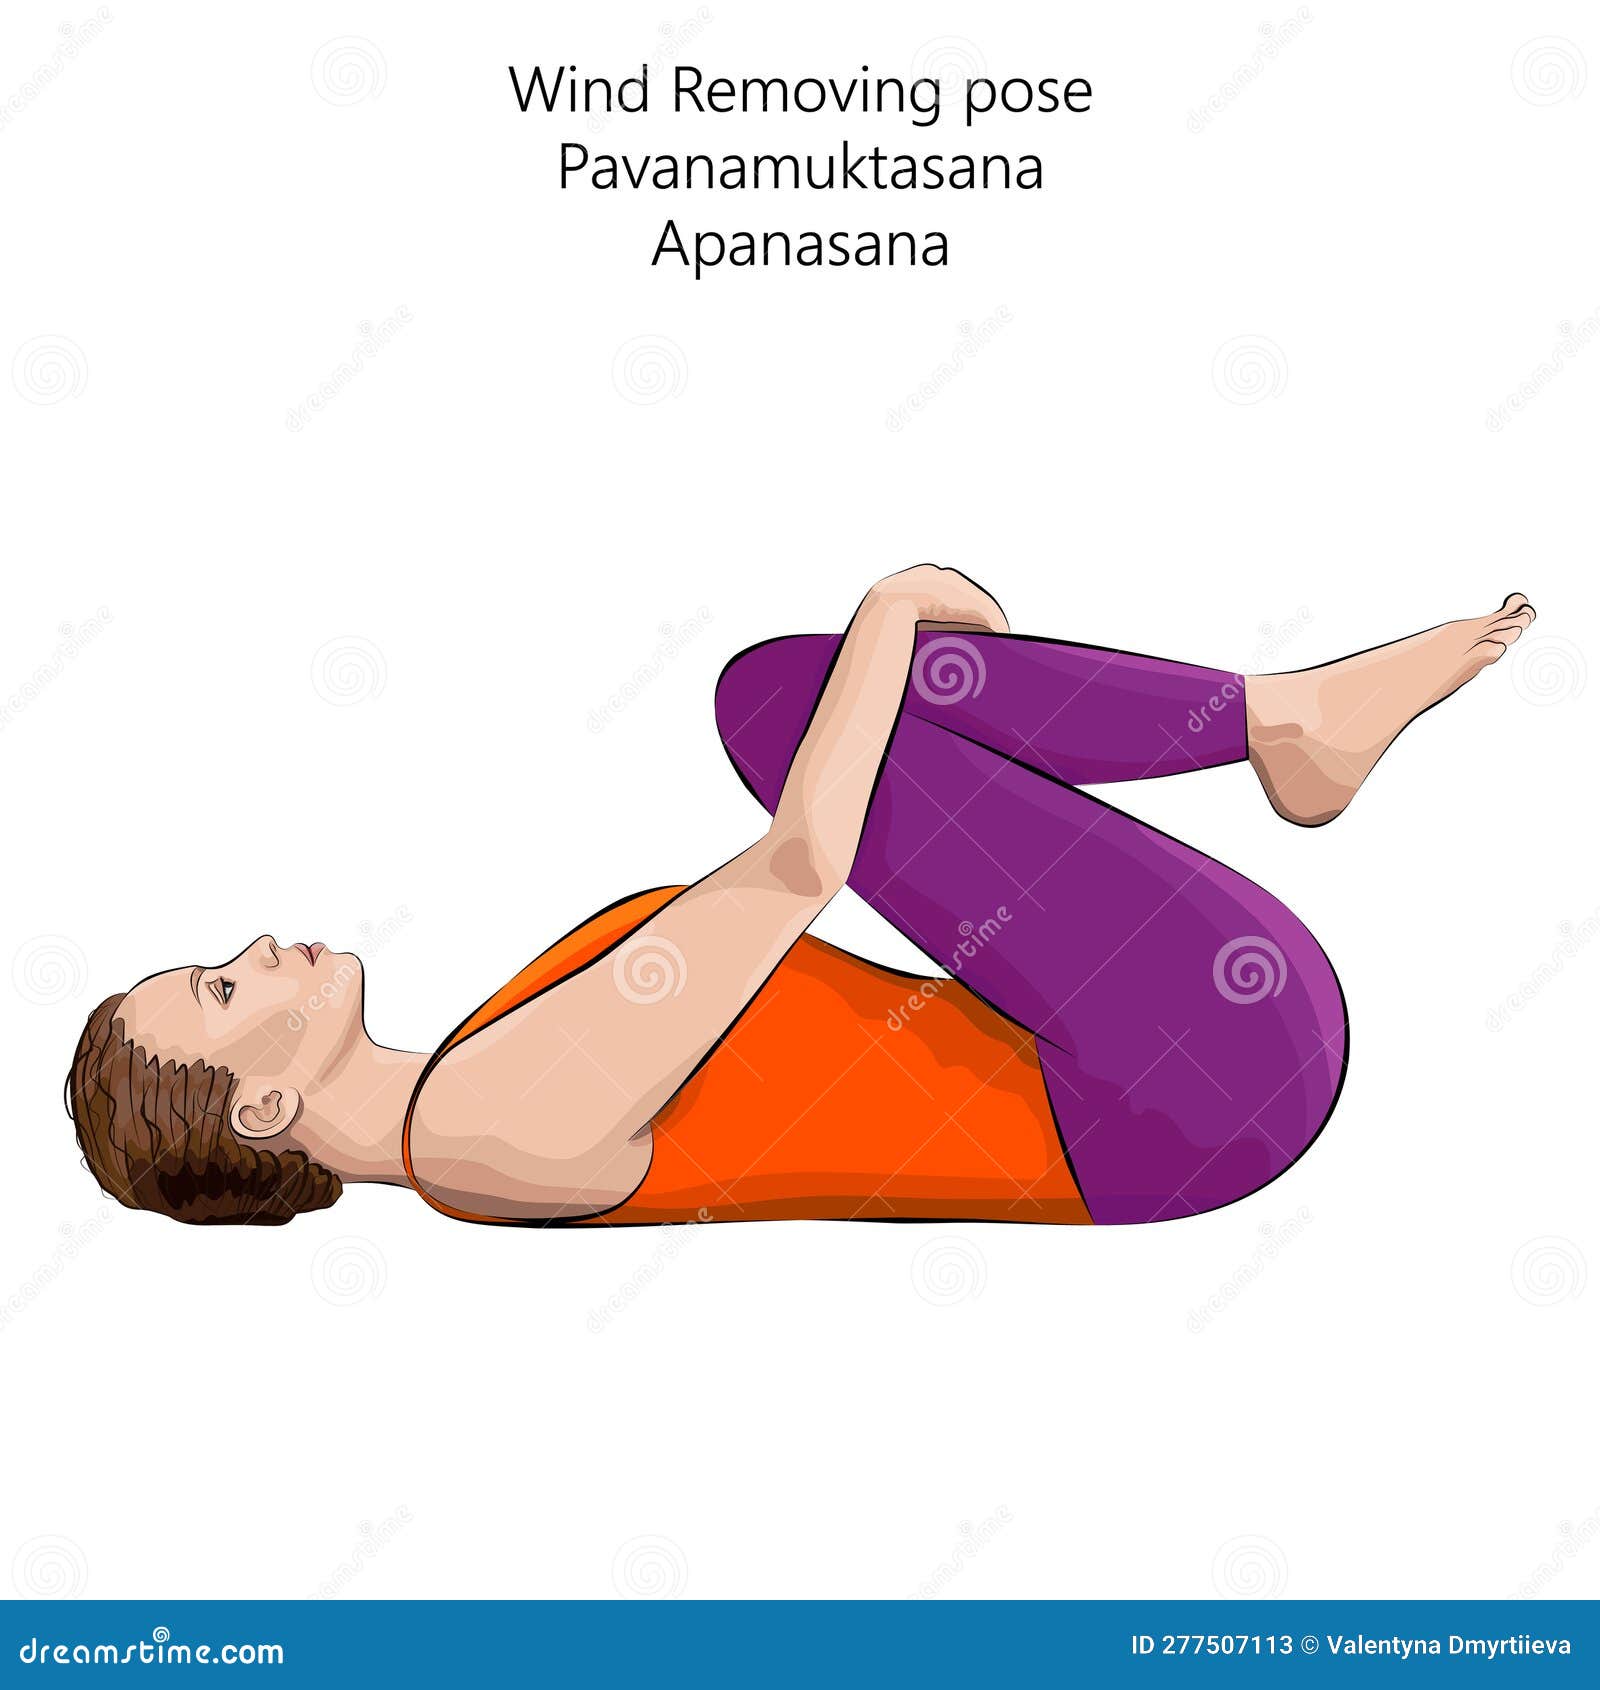 Man doing pawanmuktasana or half wind release pose